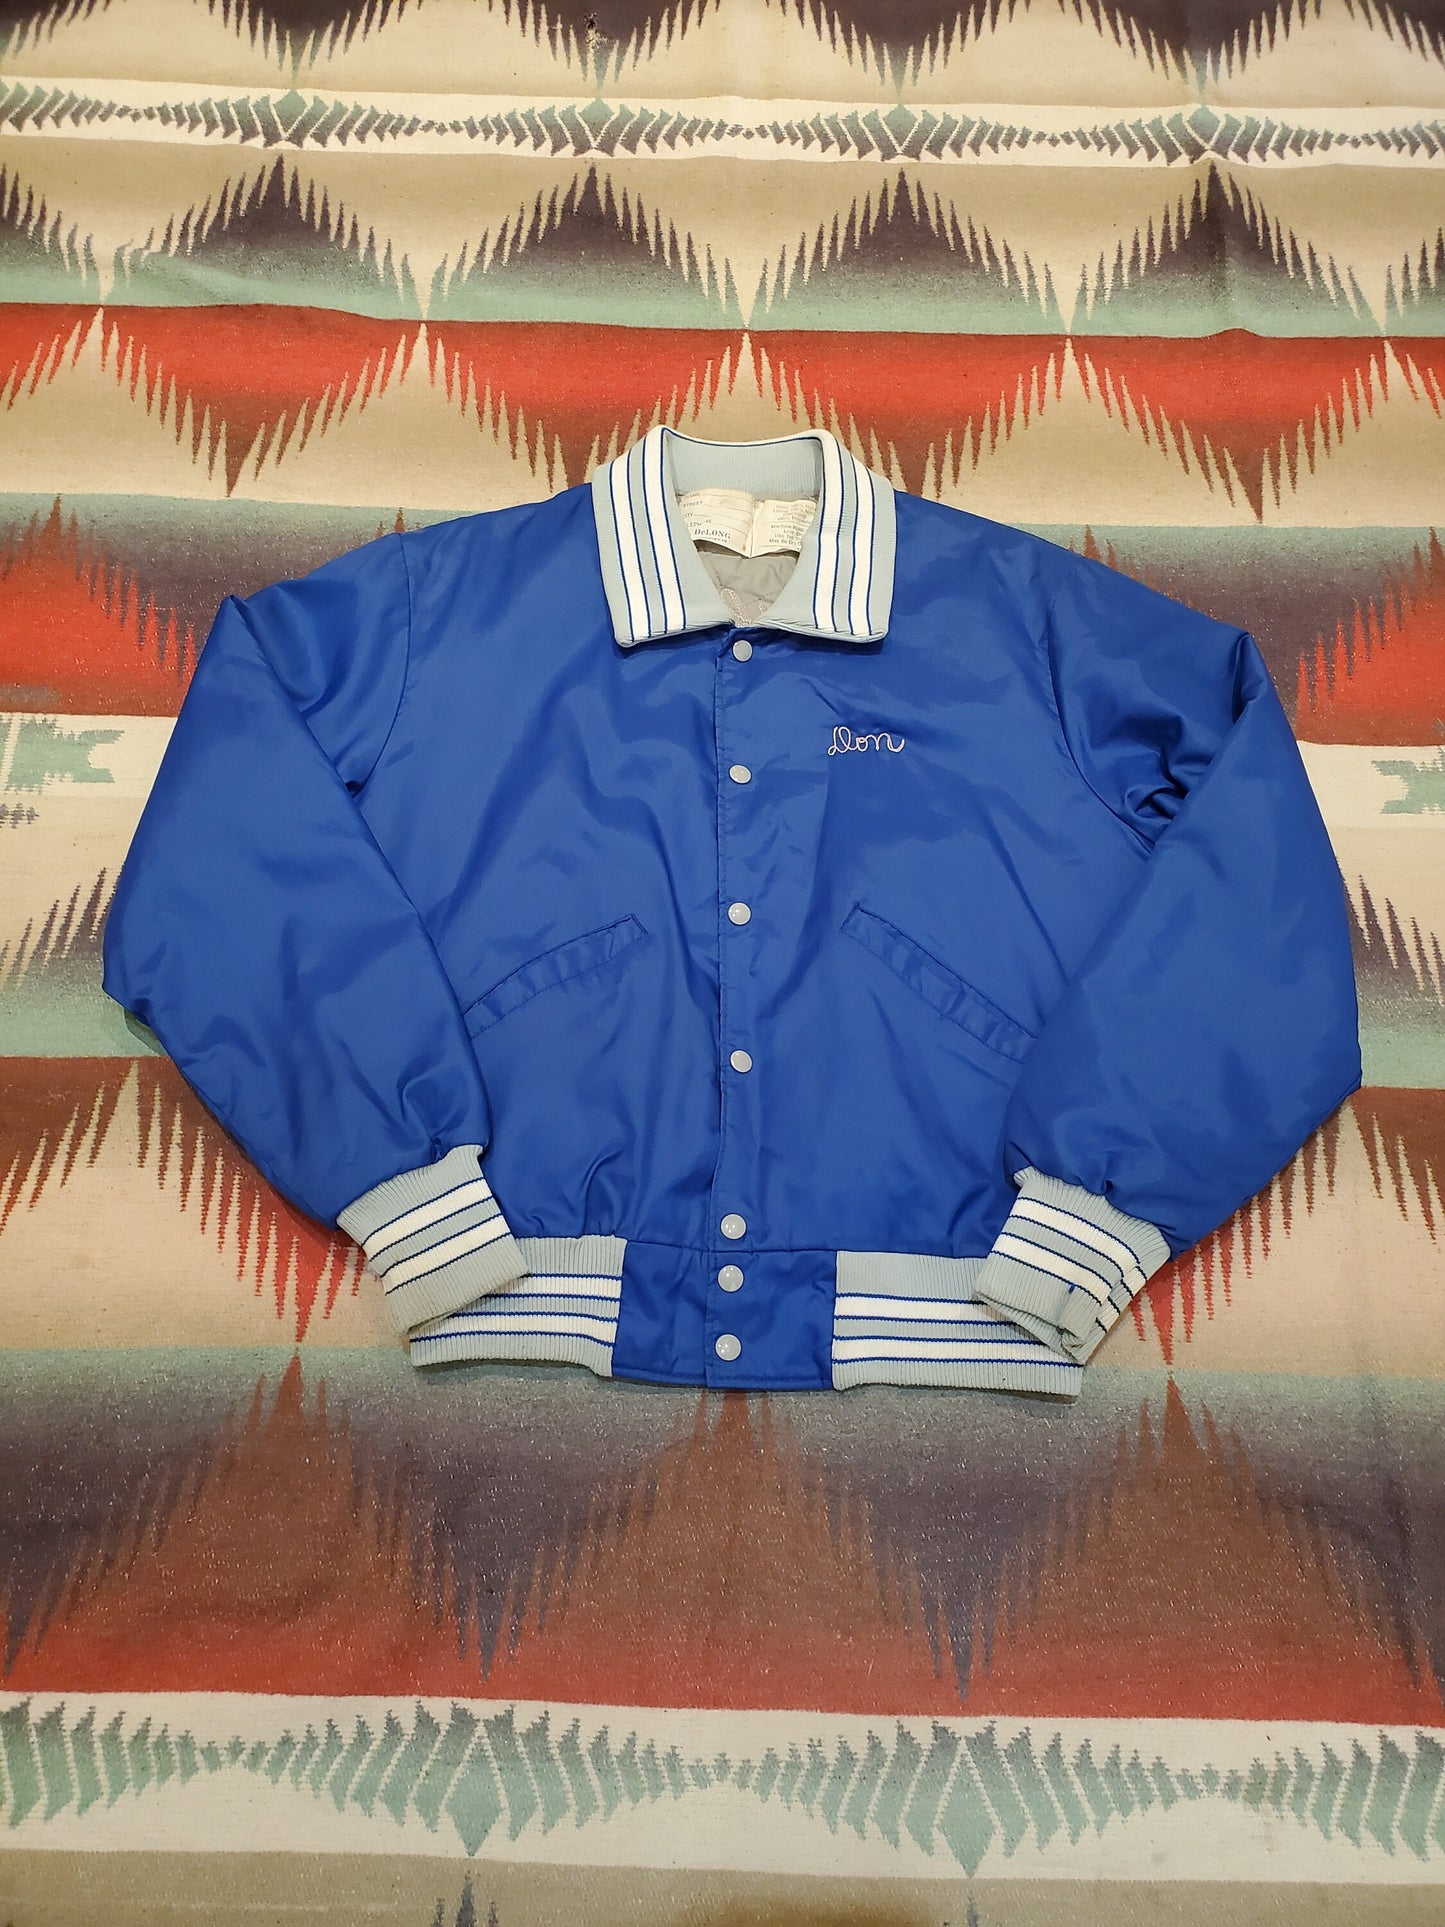 1970s DeLong 1975 "Don" Breathitt County Bobcats Football Bomber Jacket Made in USA Size M